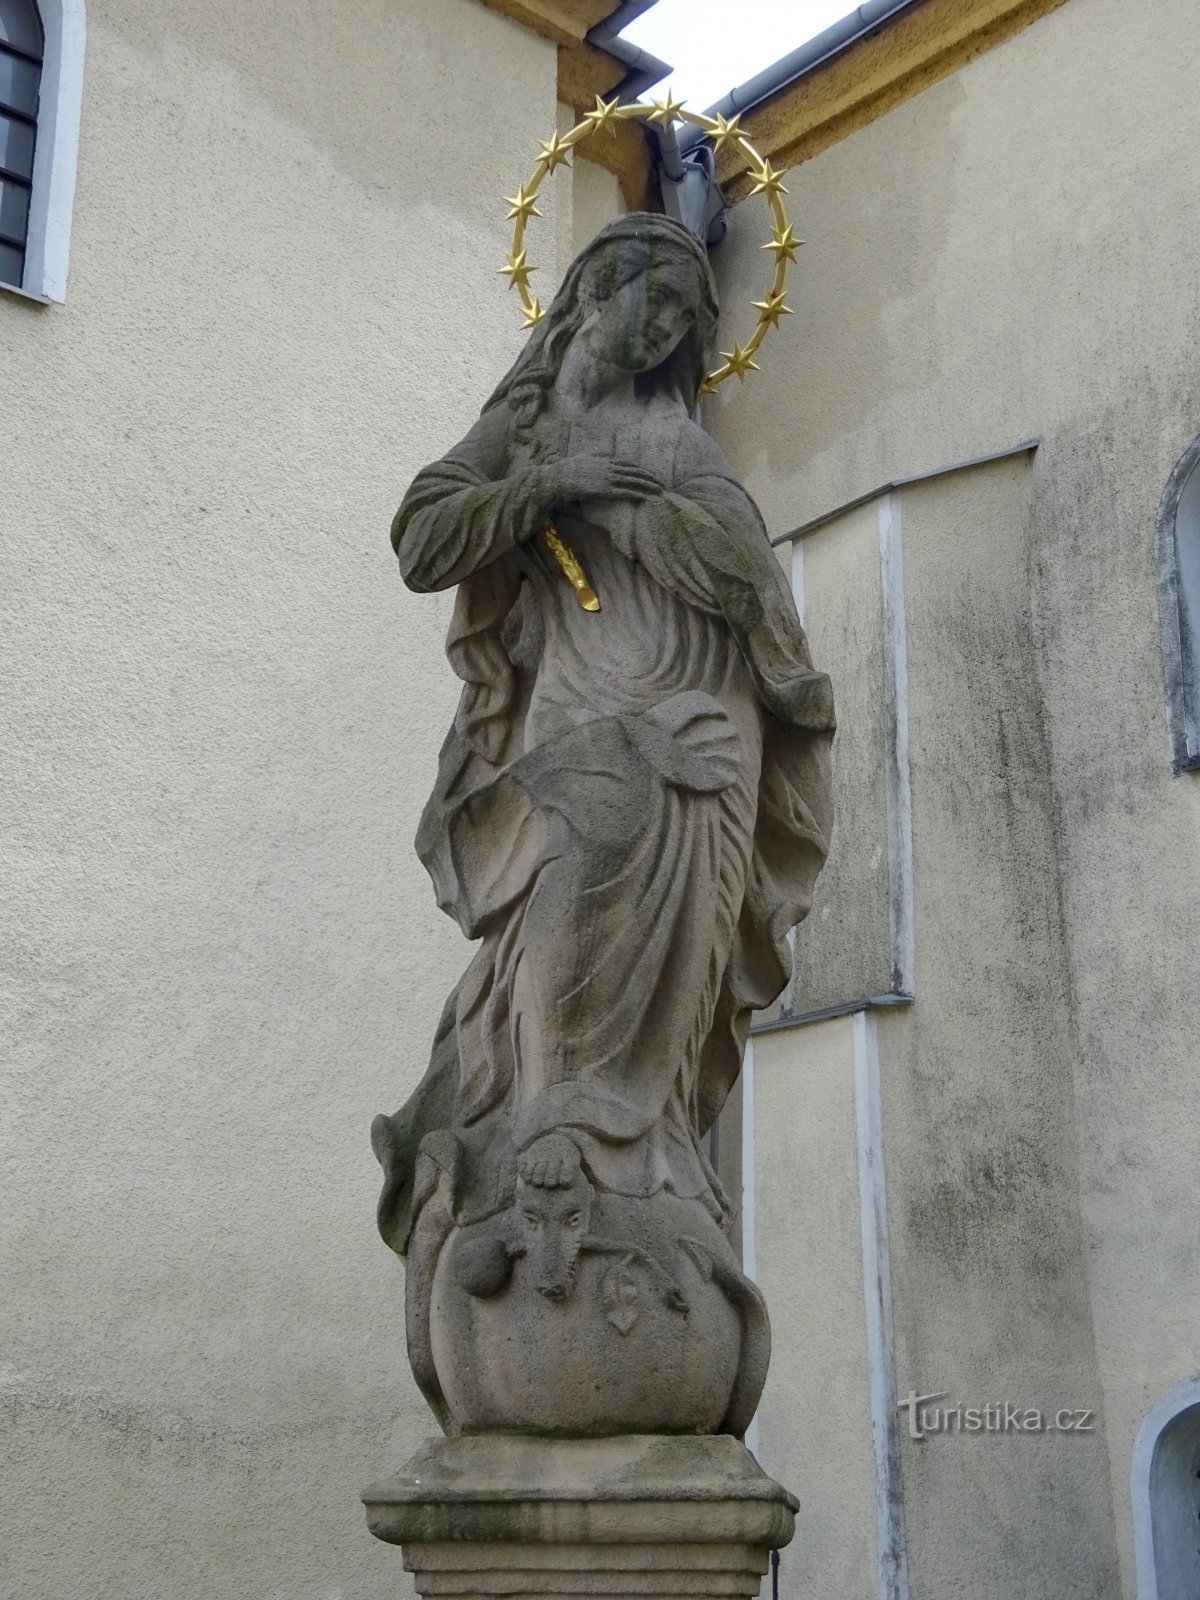 Klimkovice - άγαλμα της Παναγίας